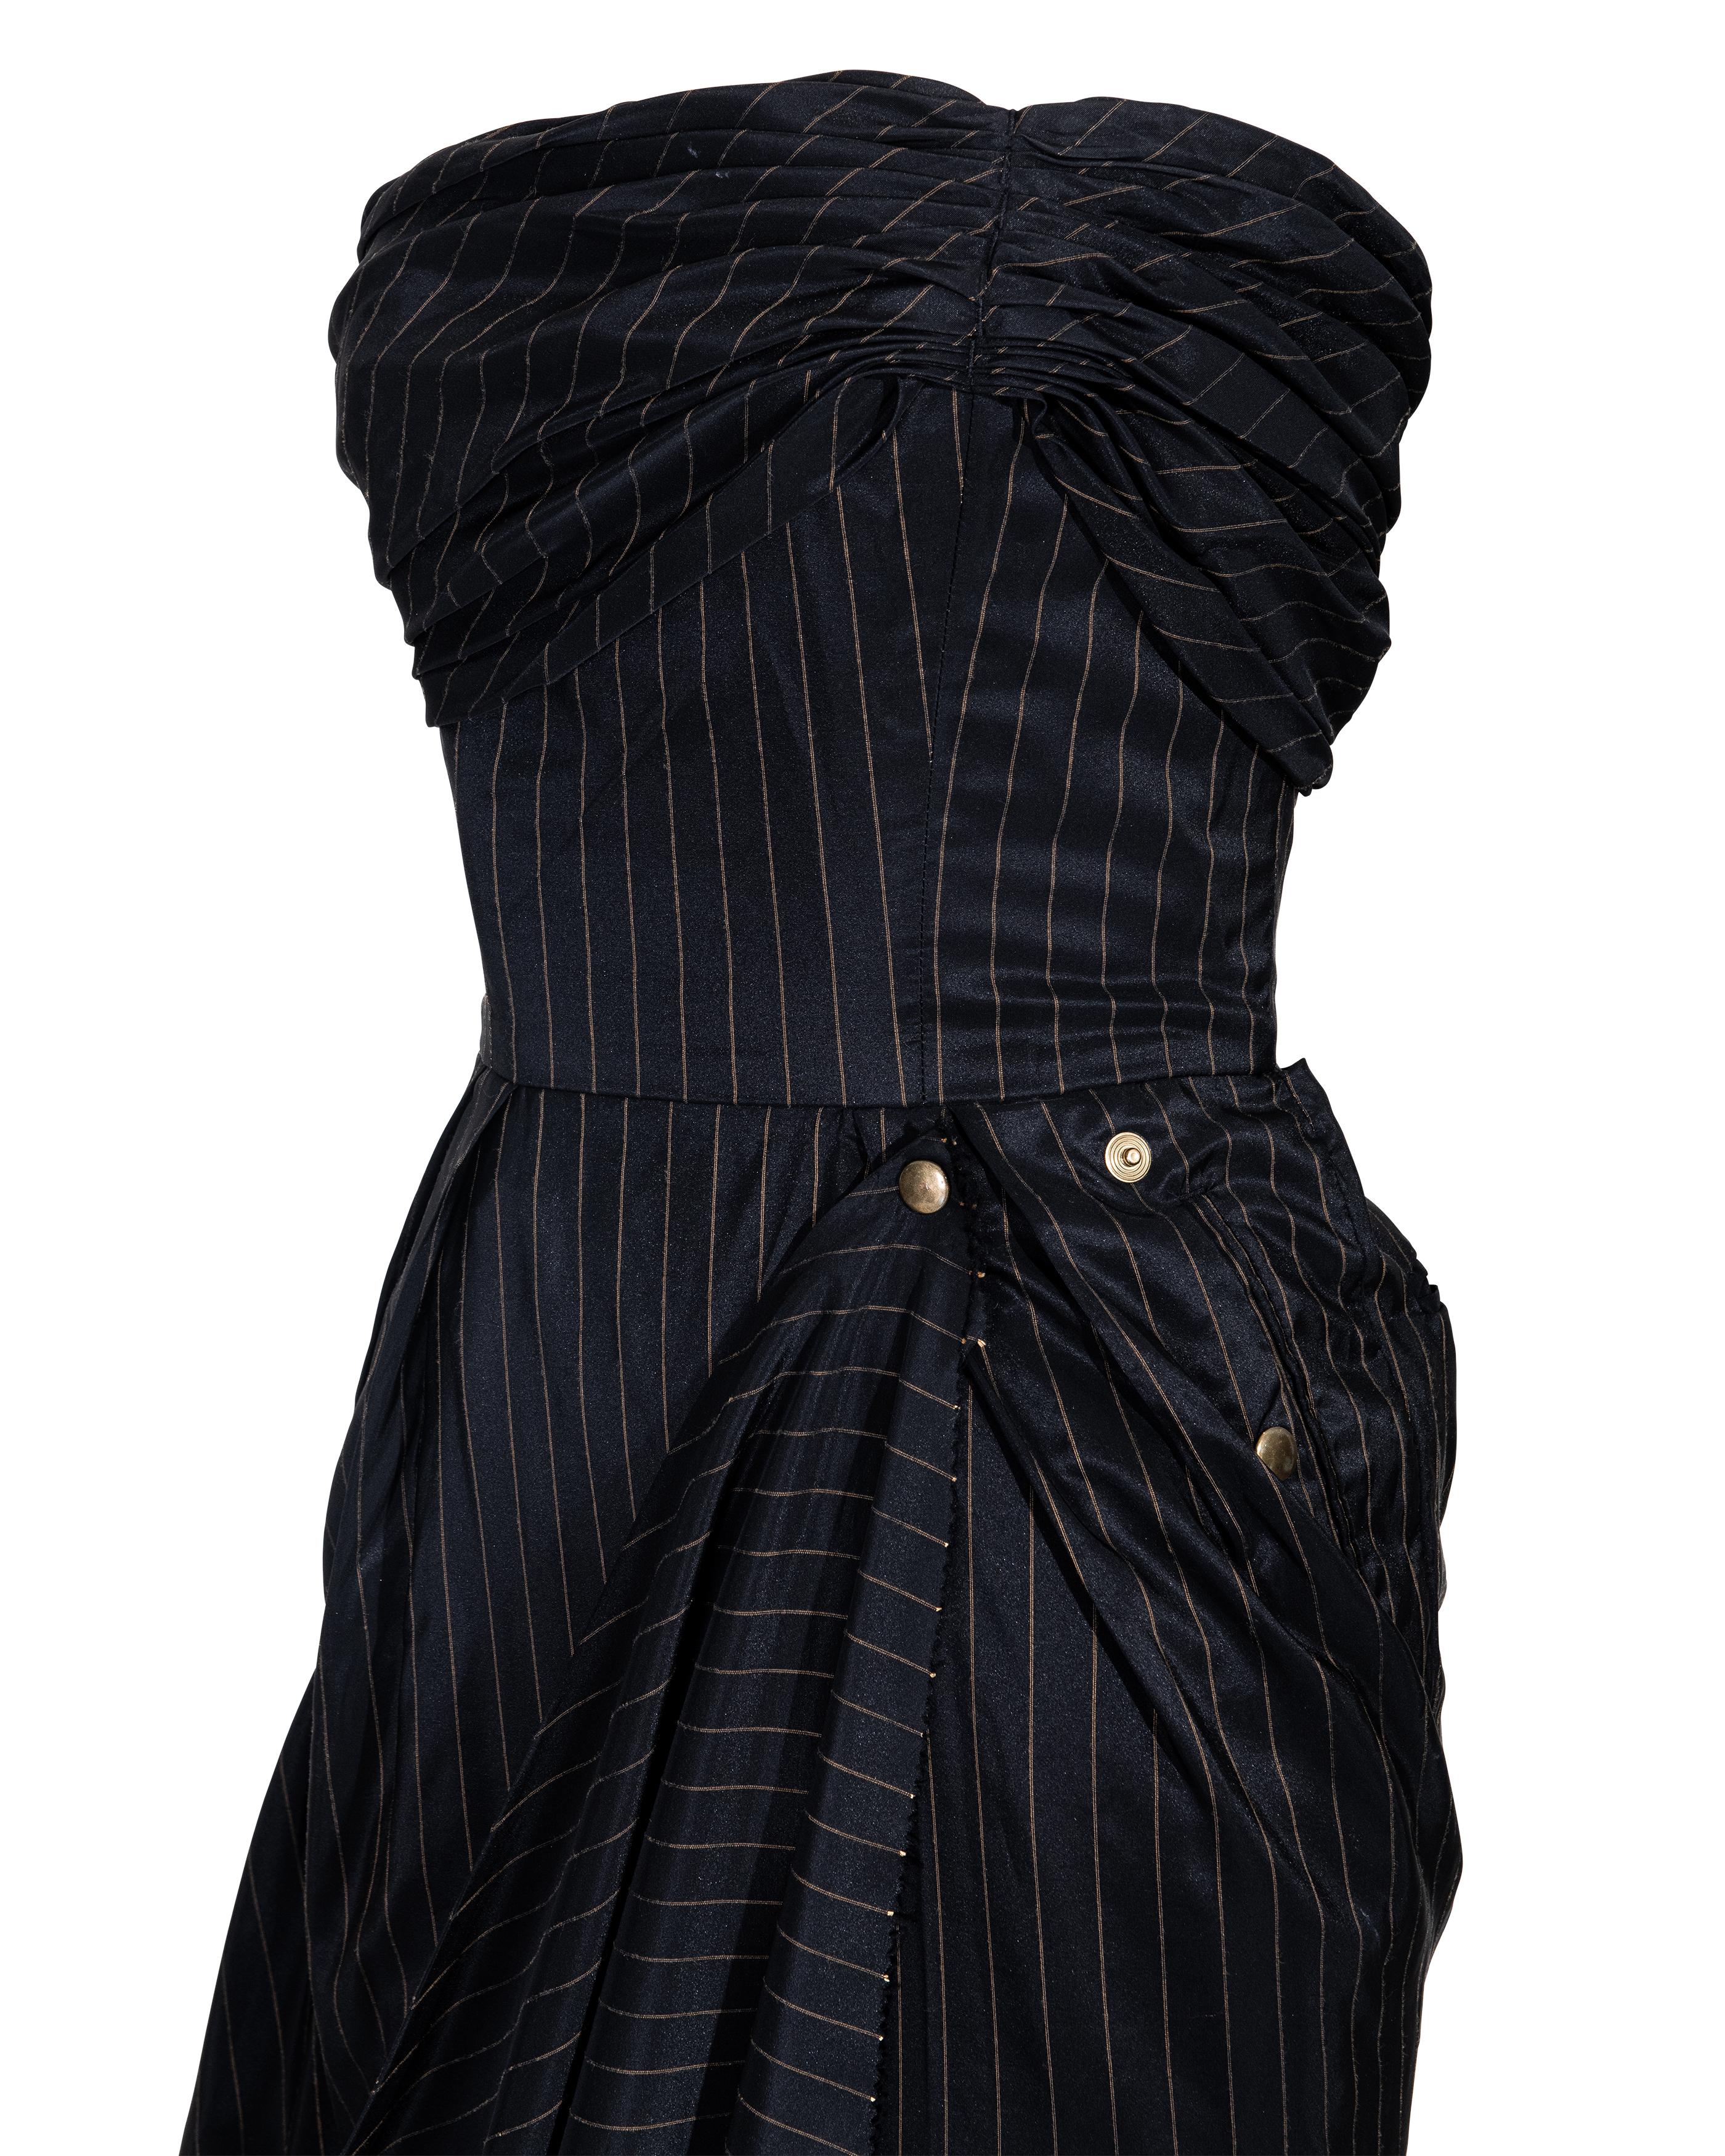 S/S 1995 Jean Paul Gaultier Pinstripe Strapless Bustle Gown 8